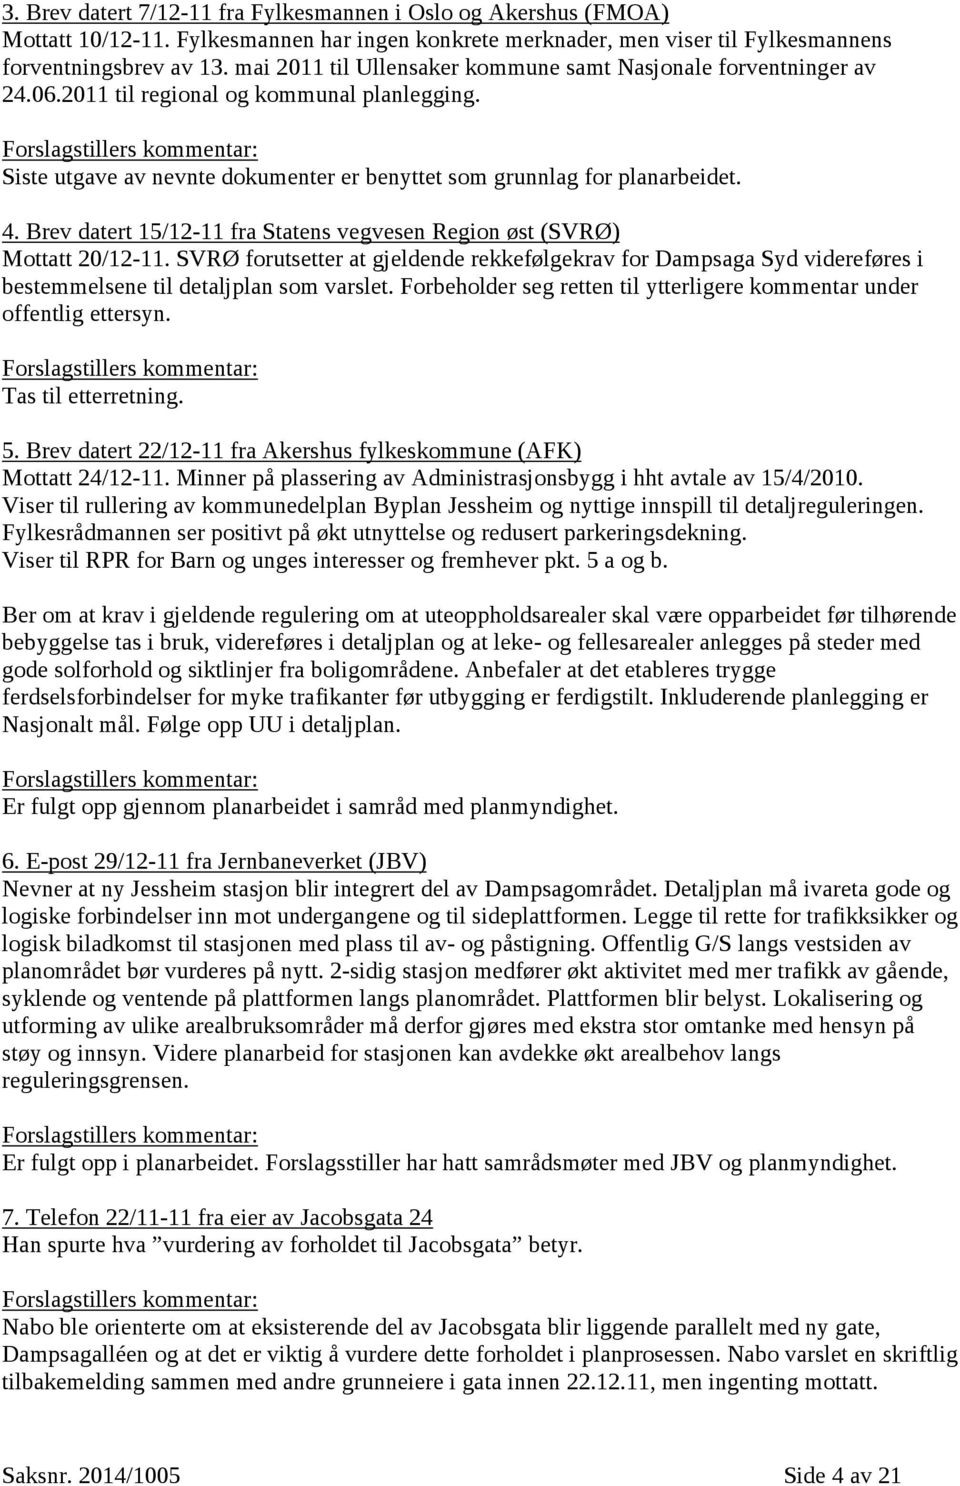 Forslagstillers kommentar: Siste utgave av nevnte dokumenter er benyttet som grunnlag for planarbeidet. 4. Brev datert 15/12-11 fra Statens vegvesen Region øst (SVRØ) Mottatt 20/12-11.